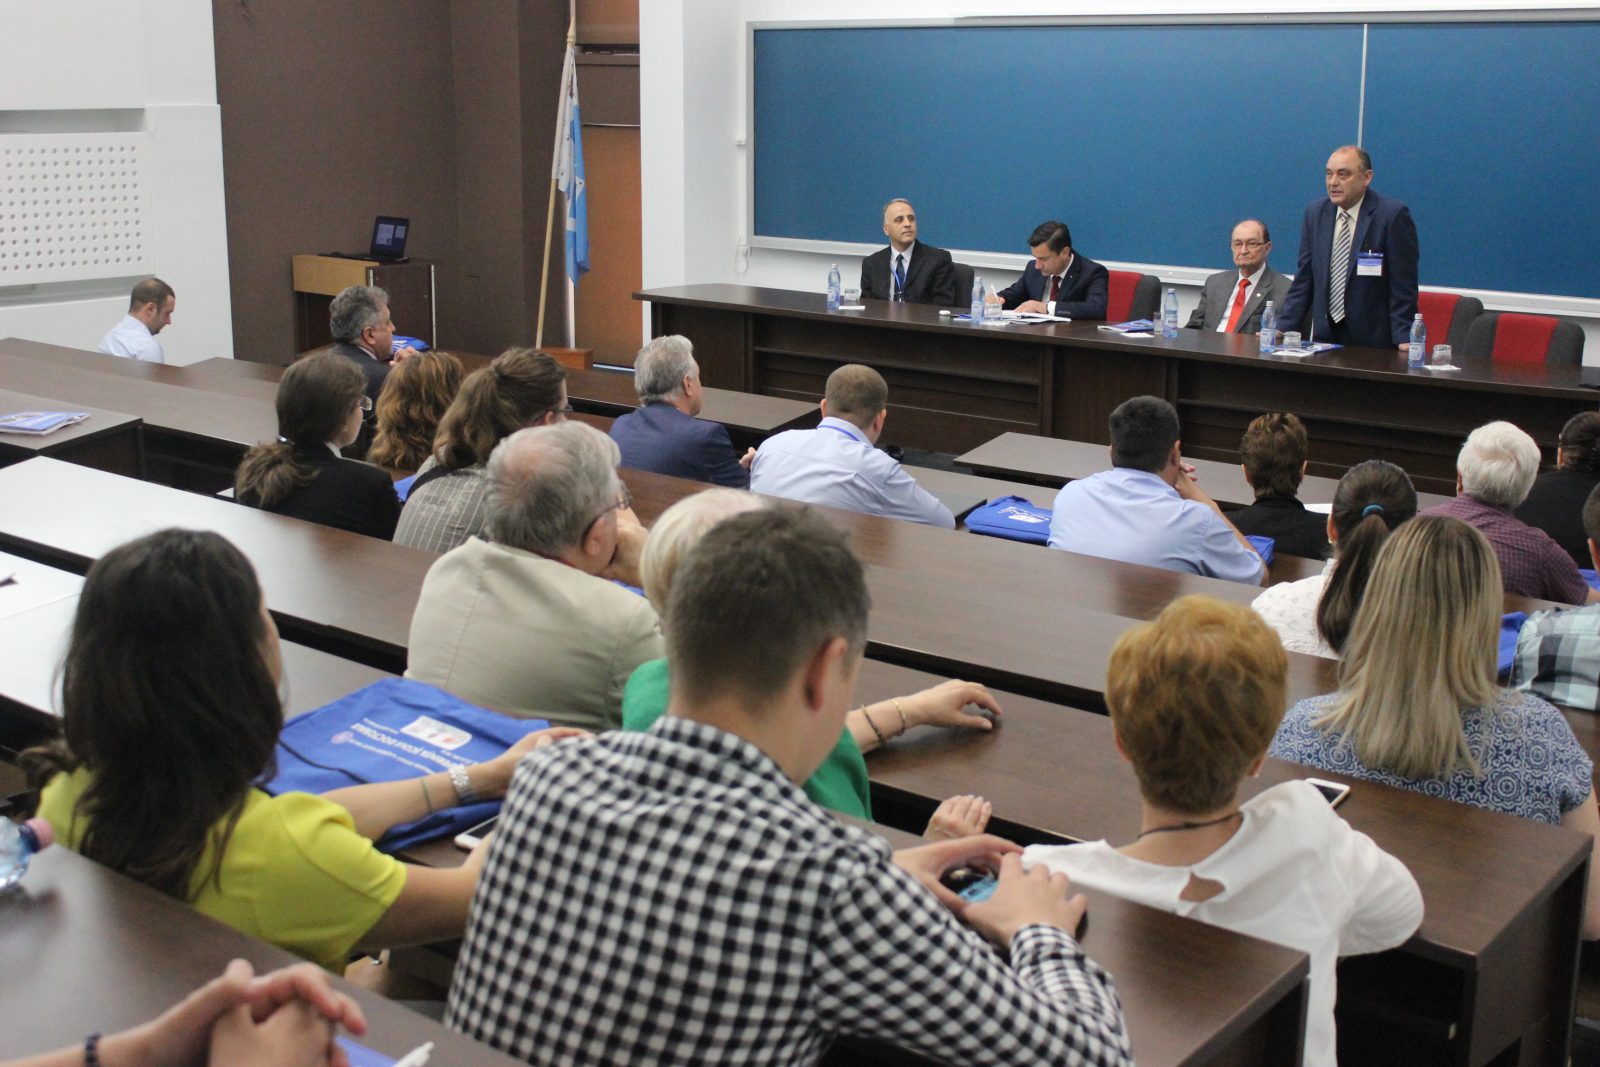 academicianul-bogdan-c-simionescu-a-vorbit-despre-planul-de-dezvoltare-a-romaniei-in-deschiderea-conferintei-scolii-doctorale-tuiasi-2018